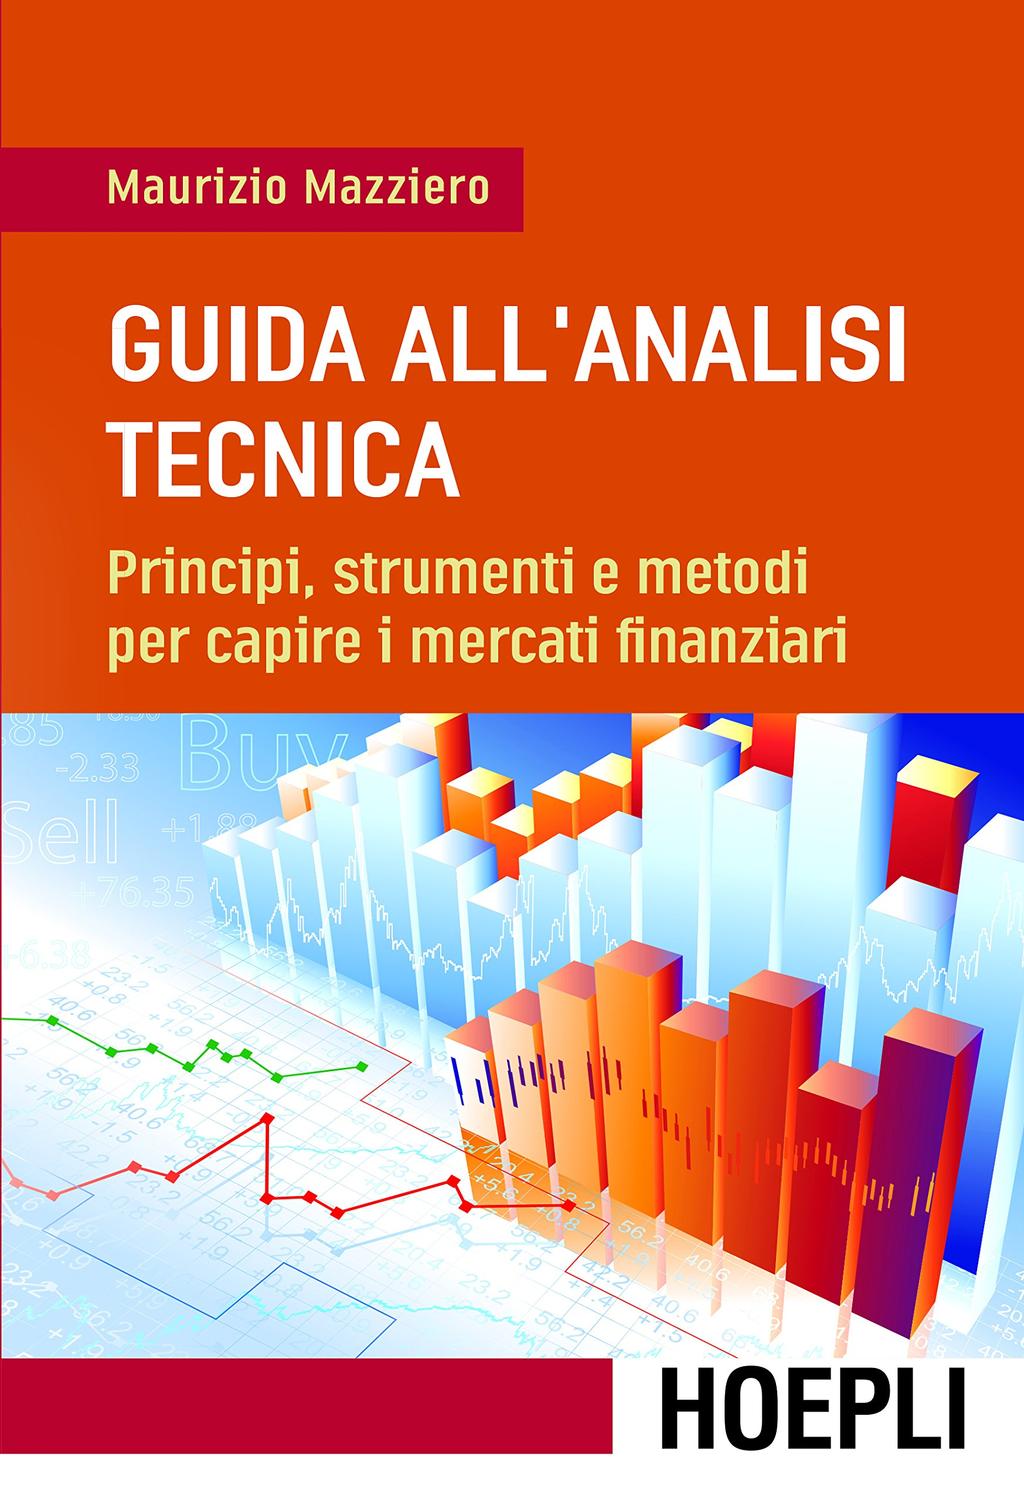 I sa Guida all'analisi tecnica: Principi, strumenti e metodi per capire i mercati finanziari Il volume costituisce una guida completa ed esauriente all analisi tecnica.